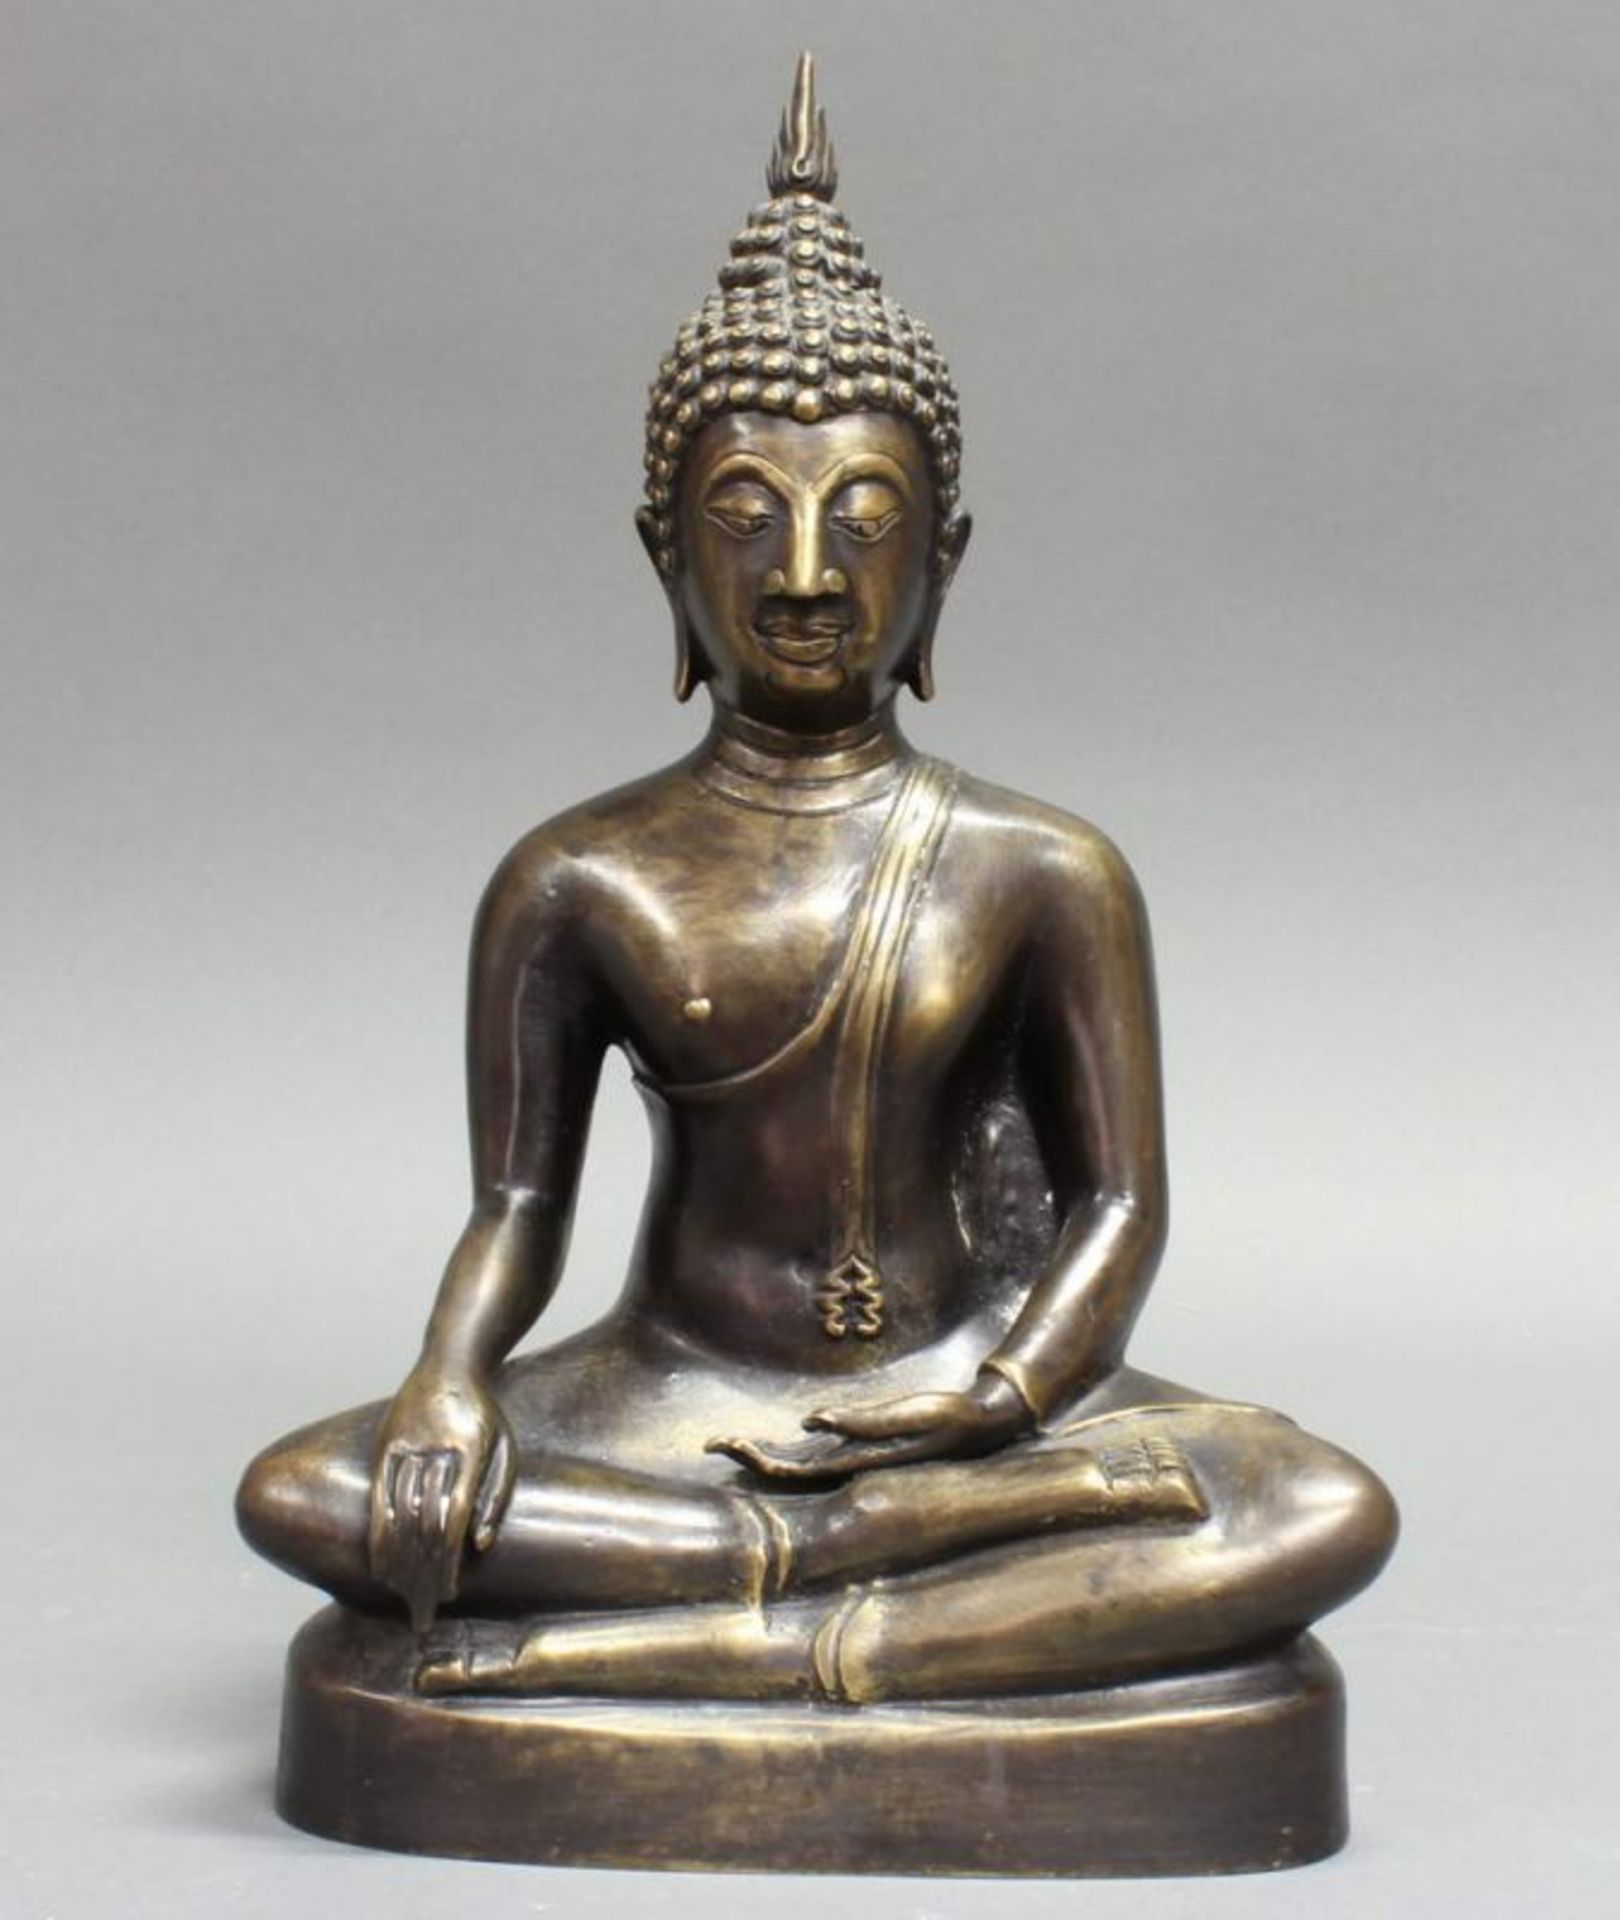 Skulptur, "Sitzender Buddha", Thailand, 20. Jh., Bronze, 35 cm hoch 20.00 % buyer's premium on the